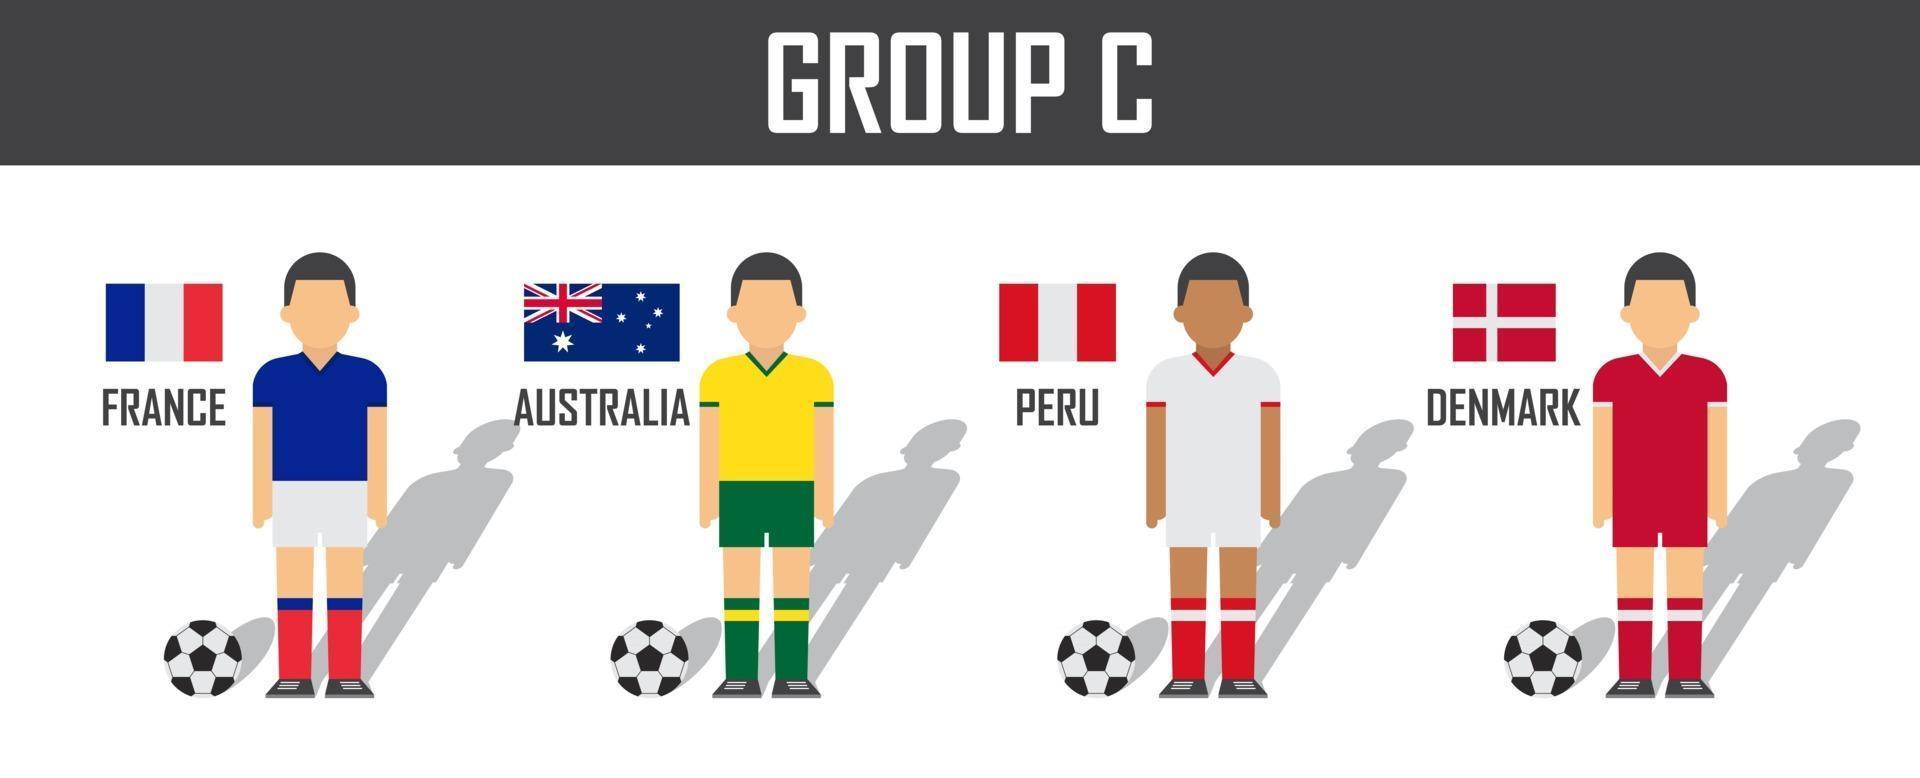 voetbalbeker 2018 teamgroep c . voetballers met jersey uniform en nationale vlaggen. vector voor internationaal wereldkampioenschapstoernooi.